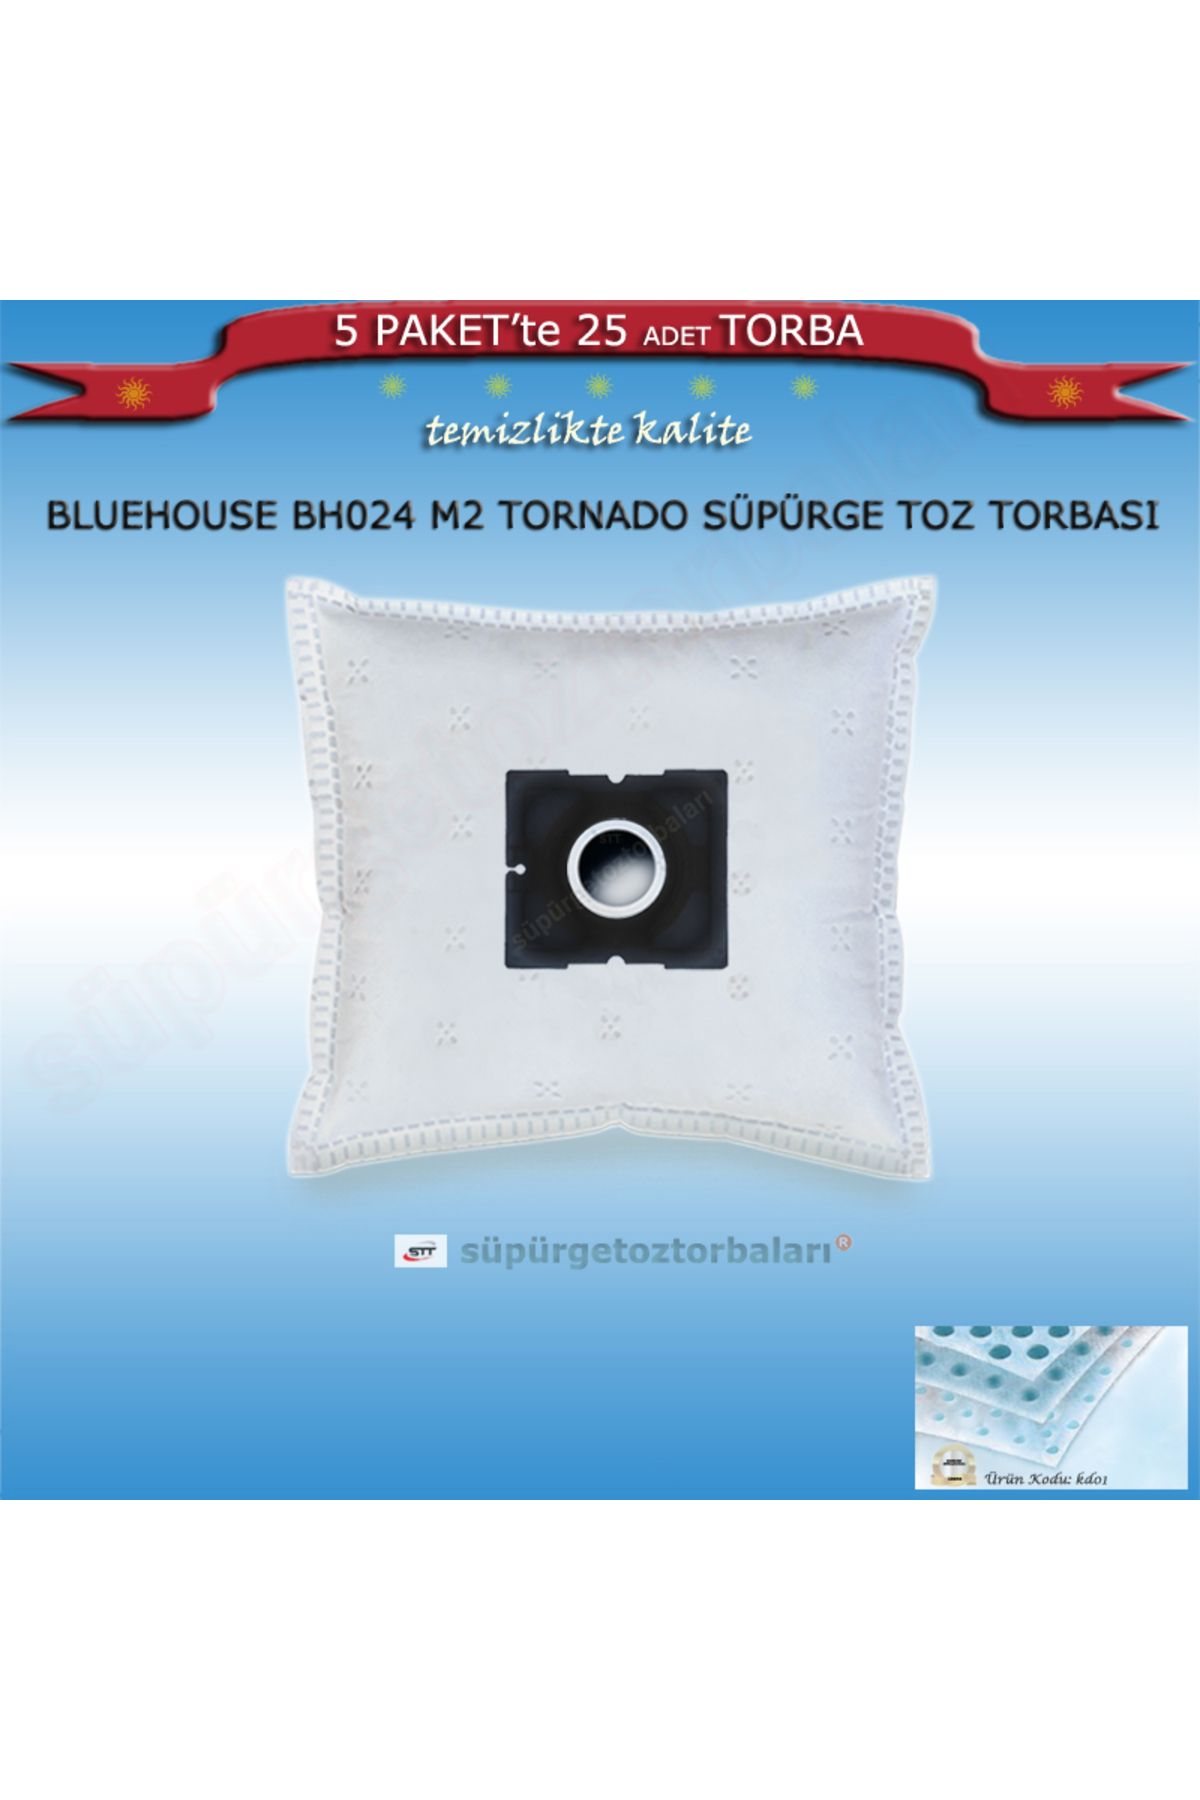 BLUE HOUSE Bluehouse Bh024 M2 Tornado Süpürge Toz Torbası 25 Adet Torba Kd01